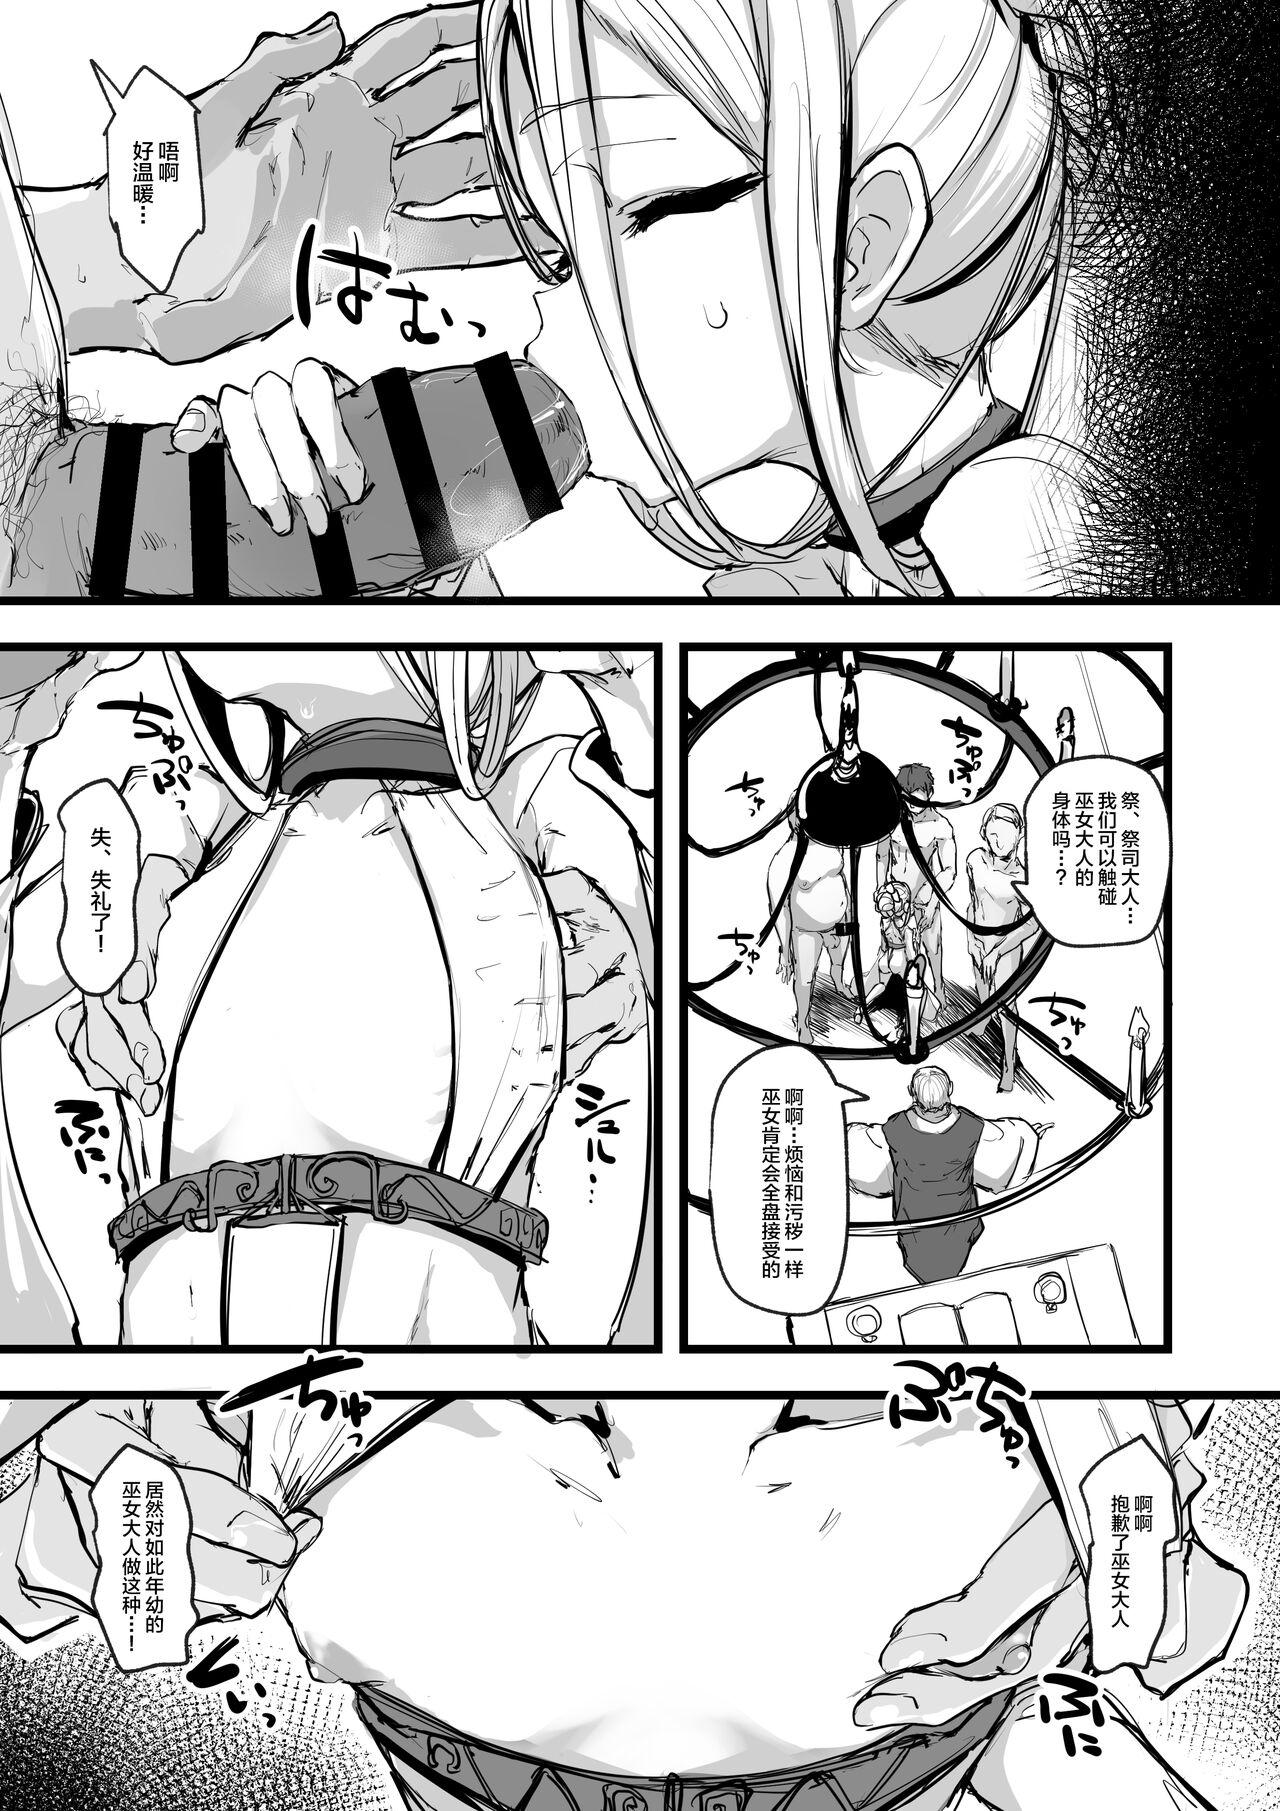 Super Hot Porn Heartless 1: Kate no Hanashi + If + Enzero Jii Manga - Original Orgia - Page 5